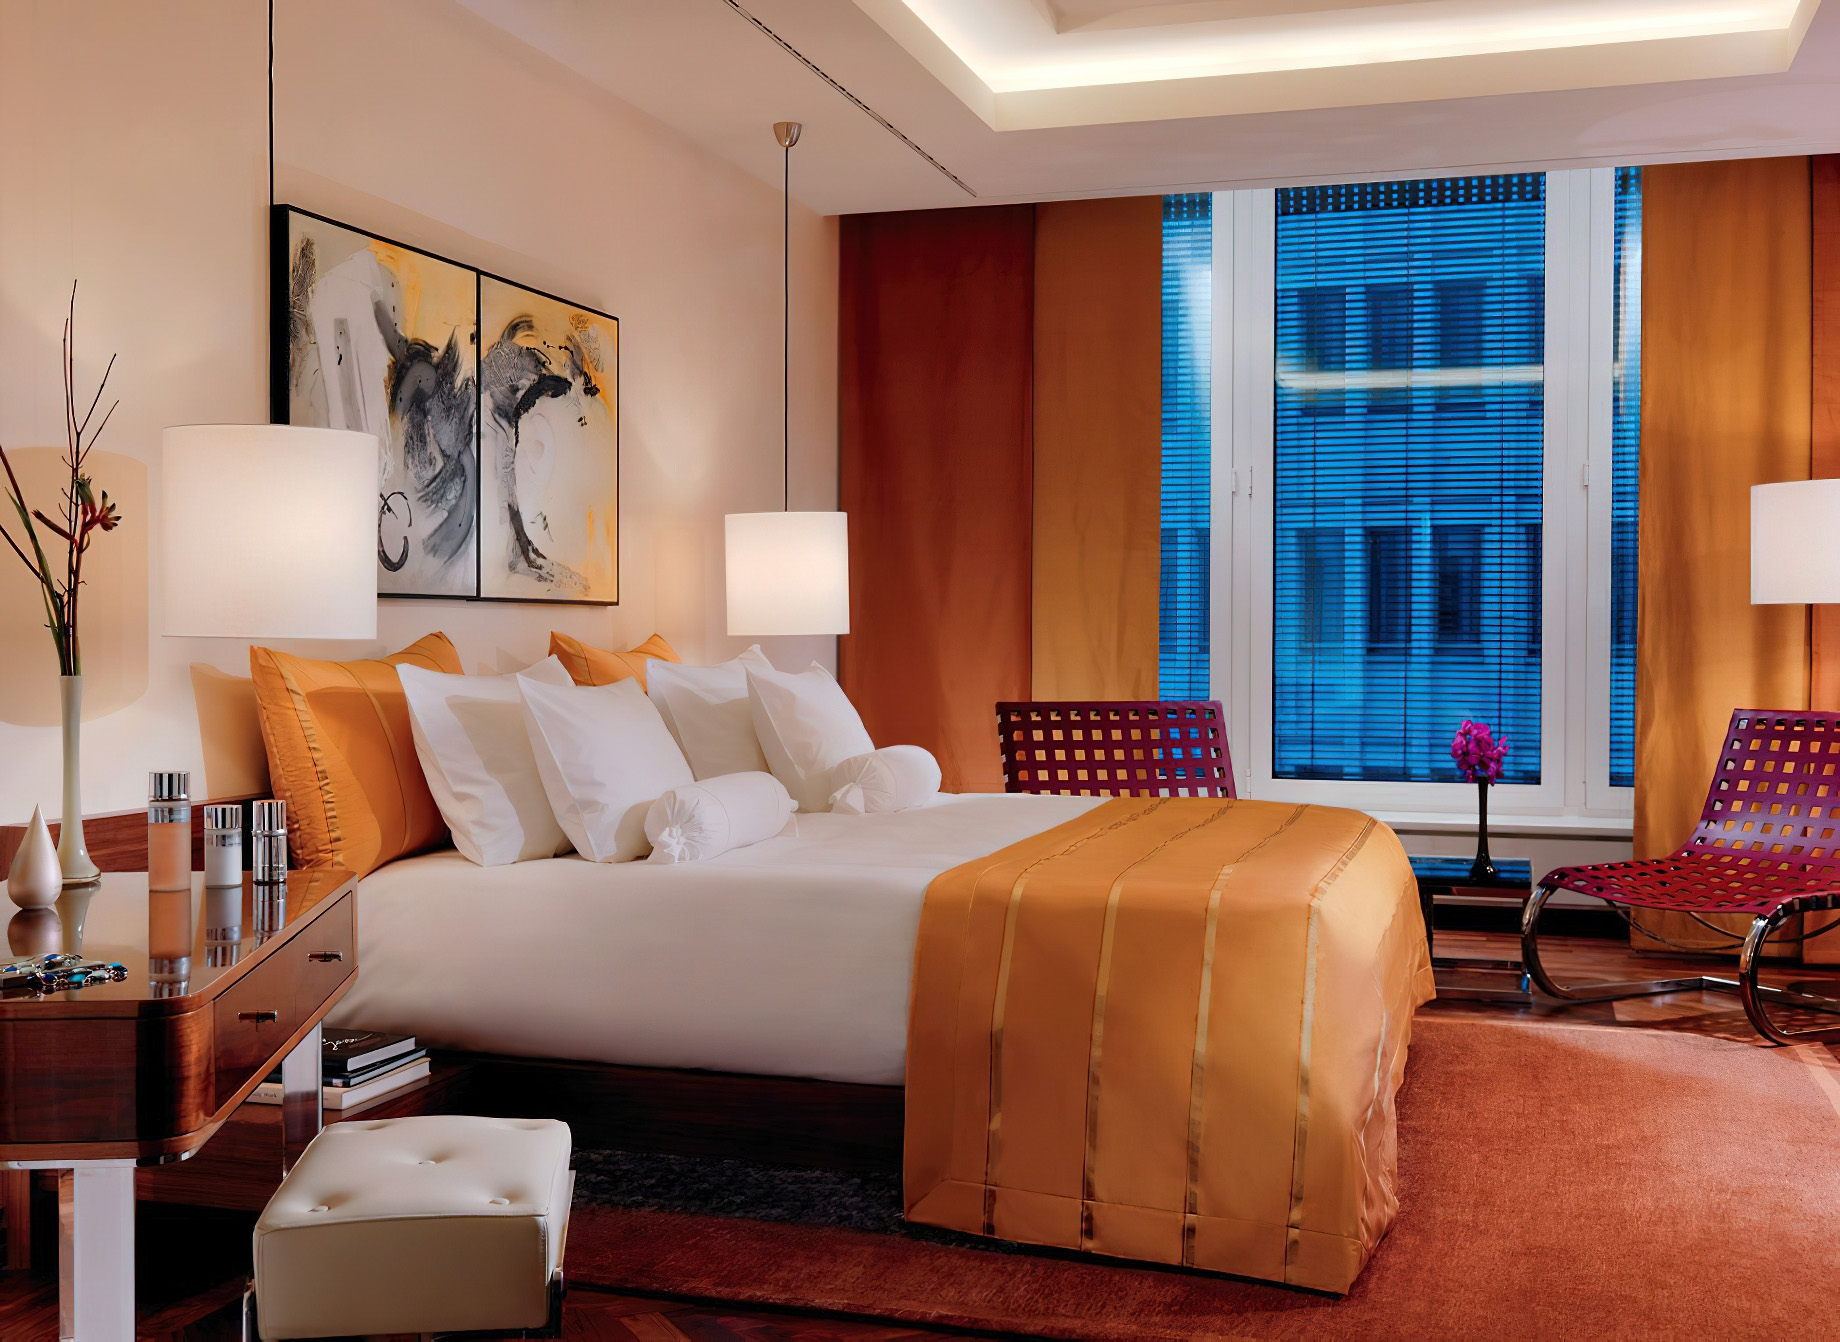 The Ritz-Carlton, Berlin Hotel – Berlin, Germany – The Ritz-Carlton Penthouse Bedroom